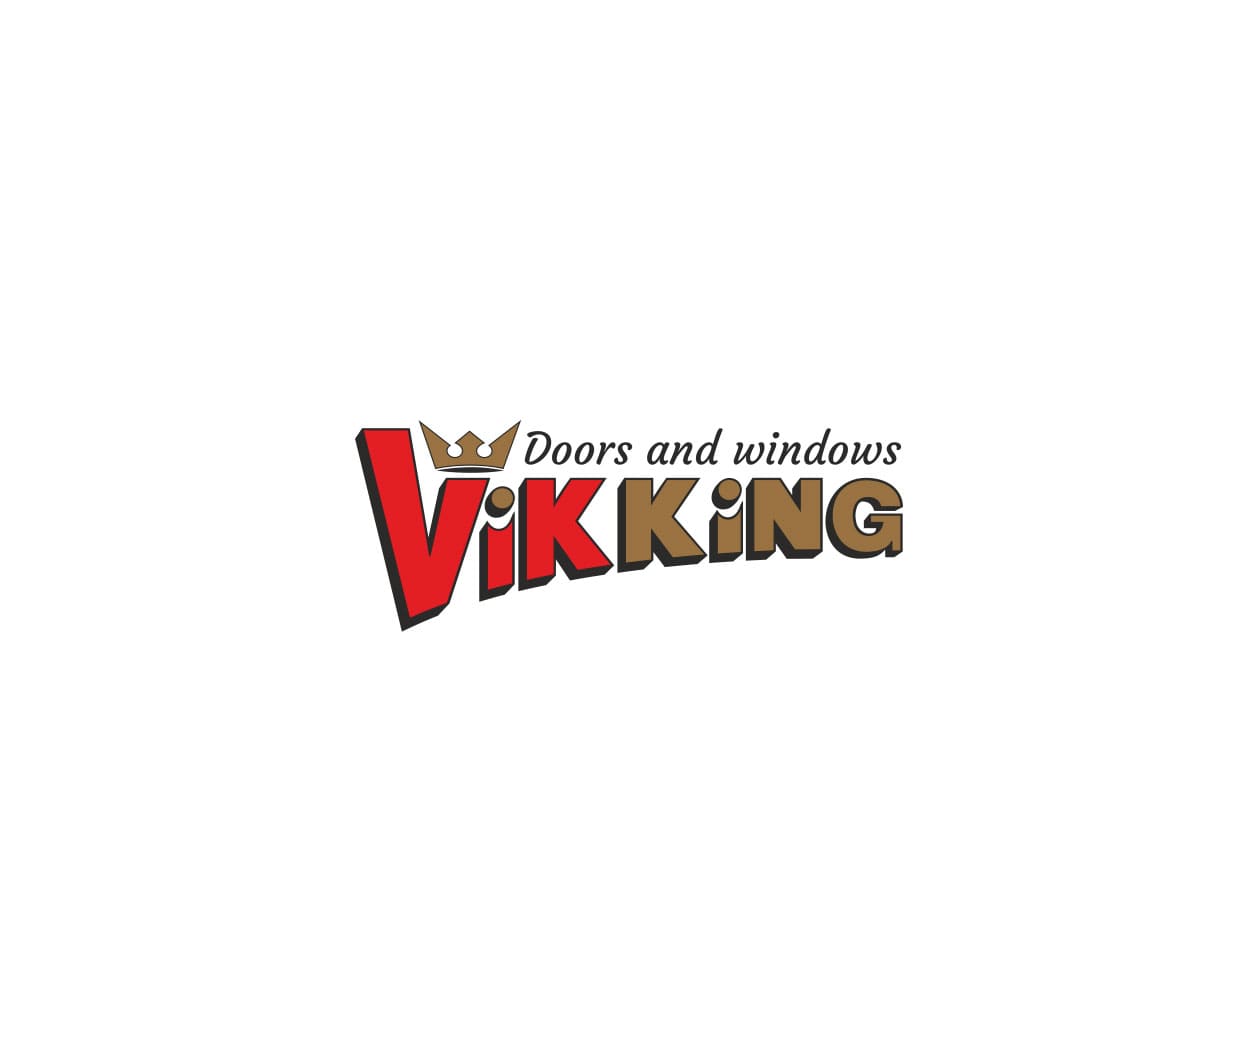 viking-logo